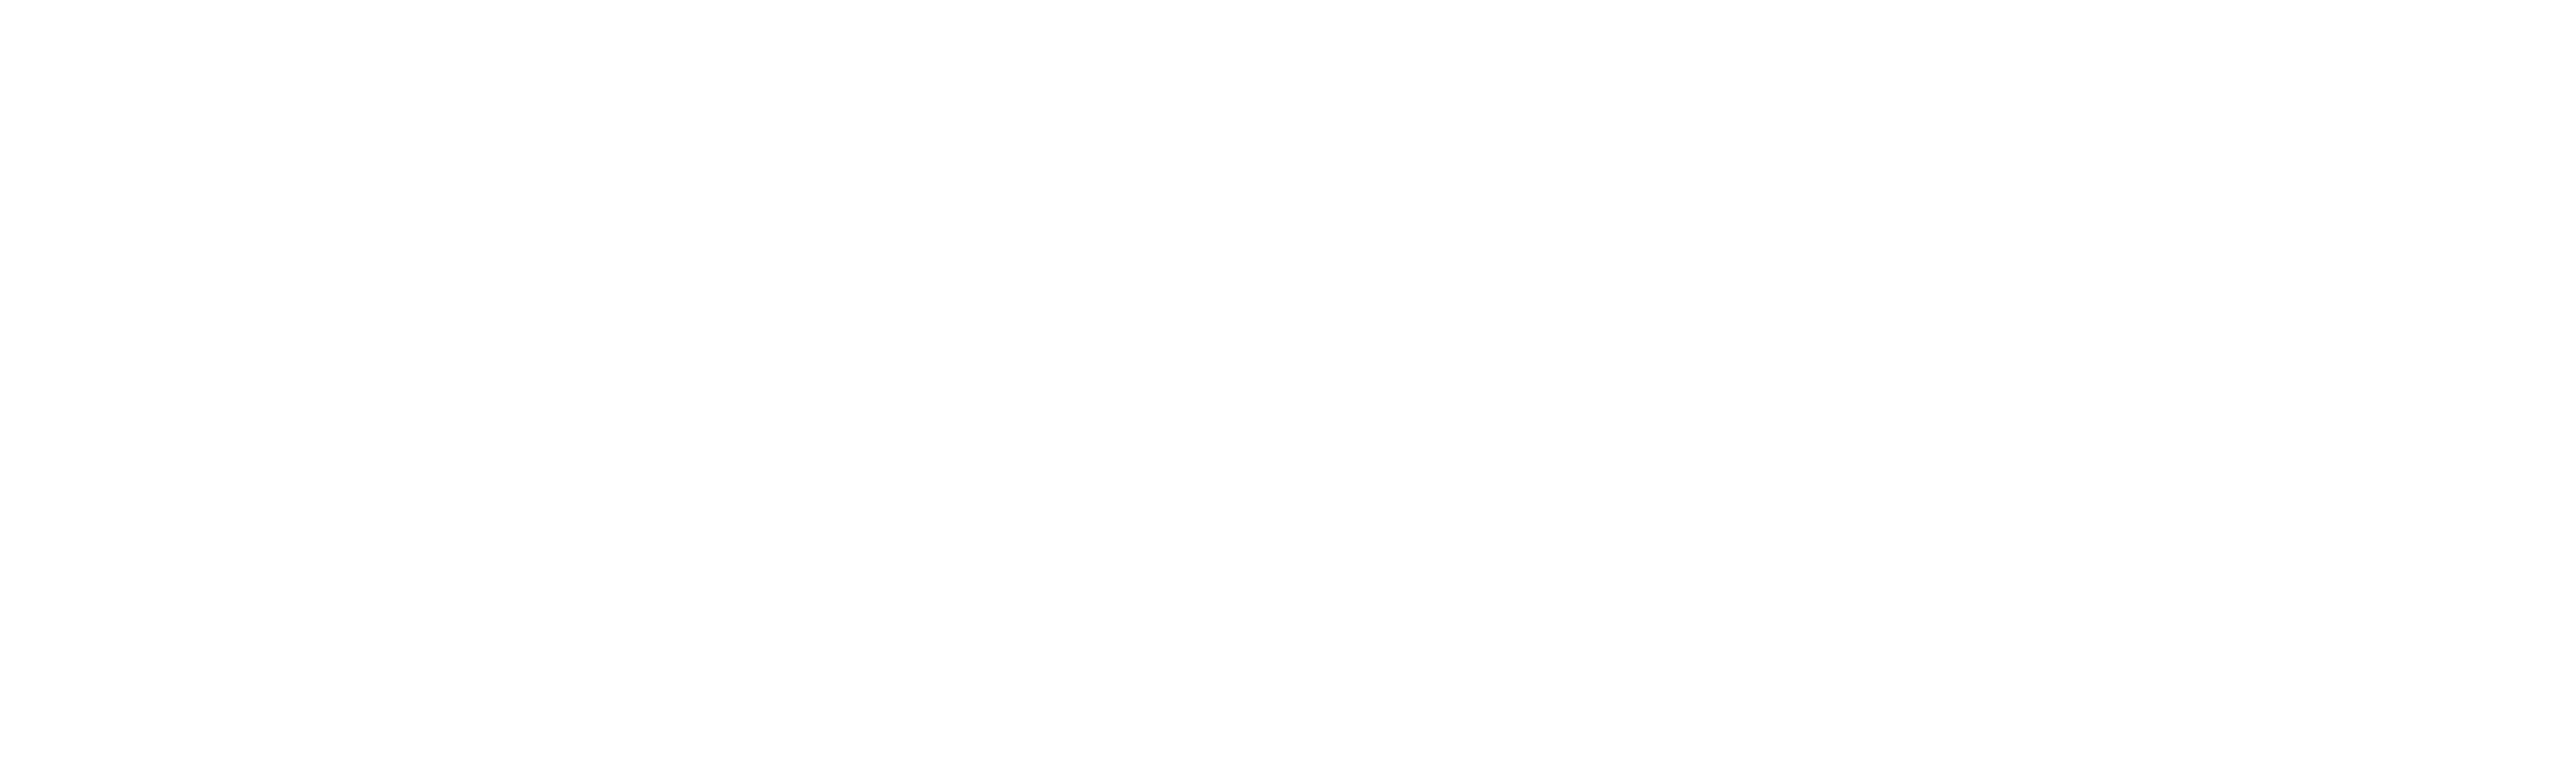 Avantex-fashion-pitch-logo-white